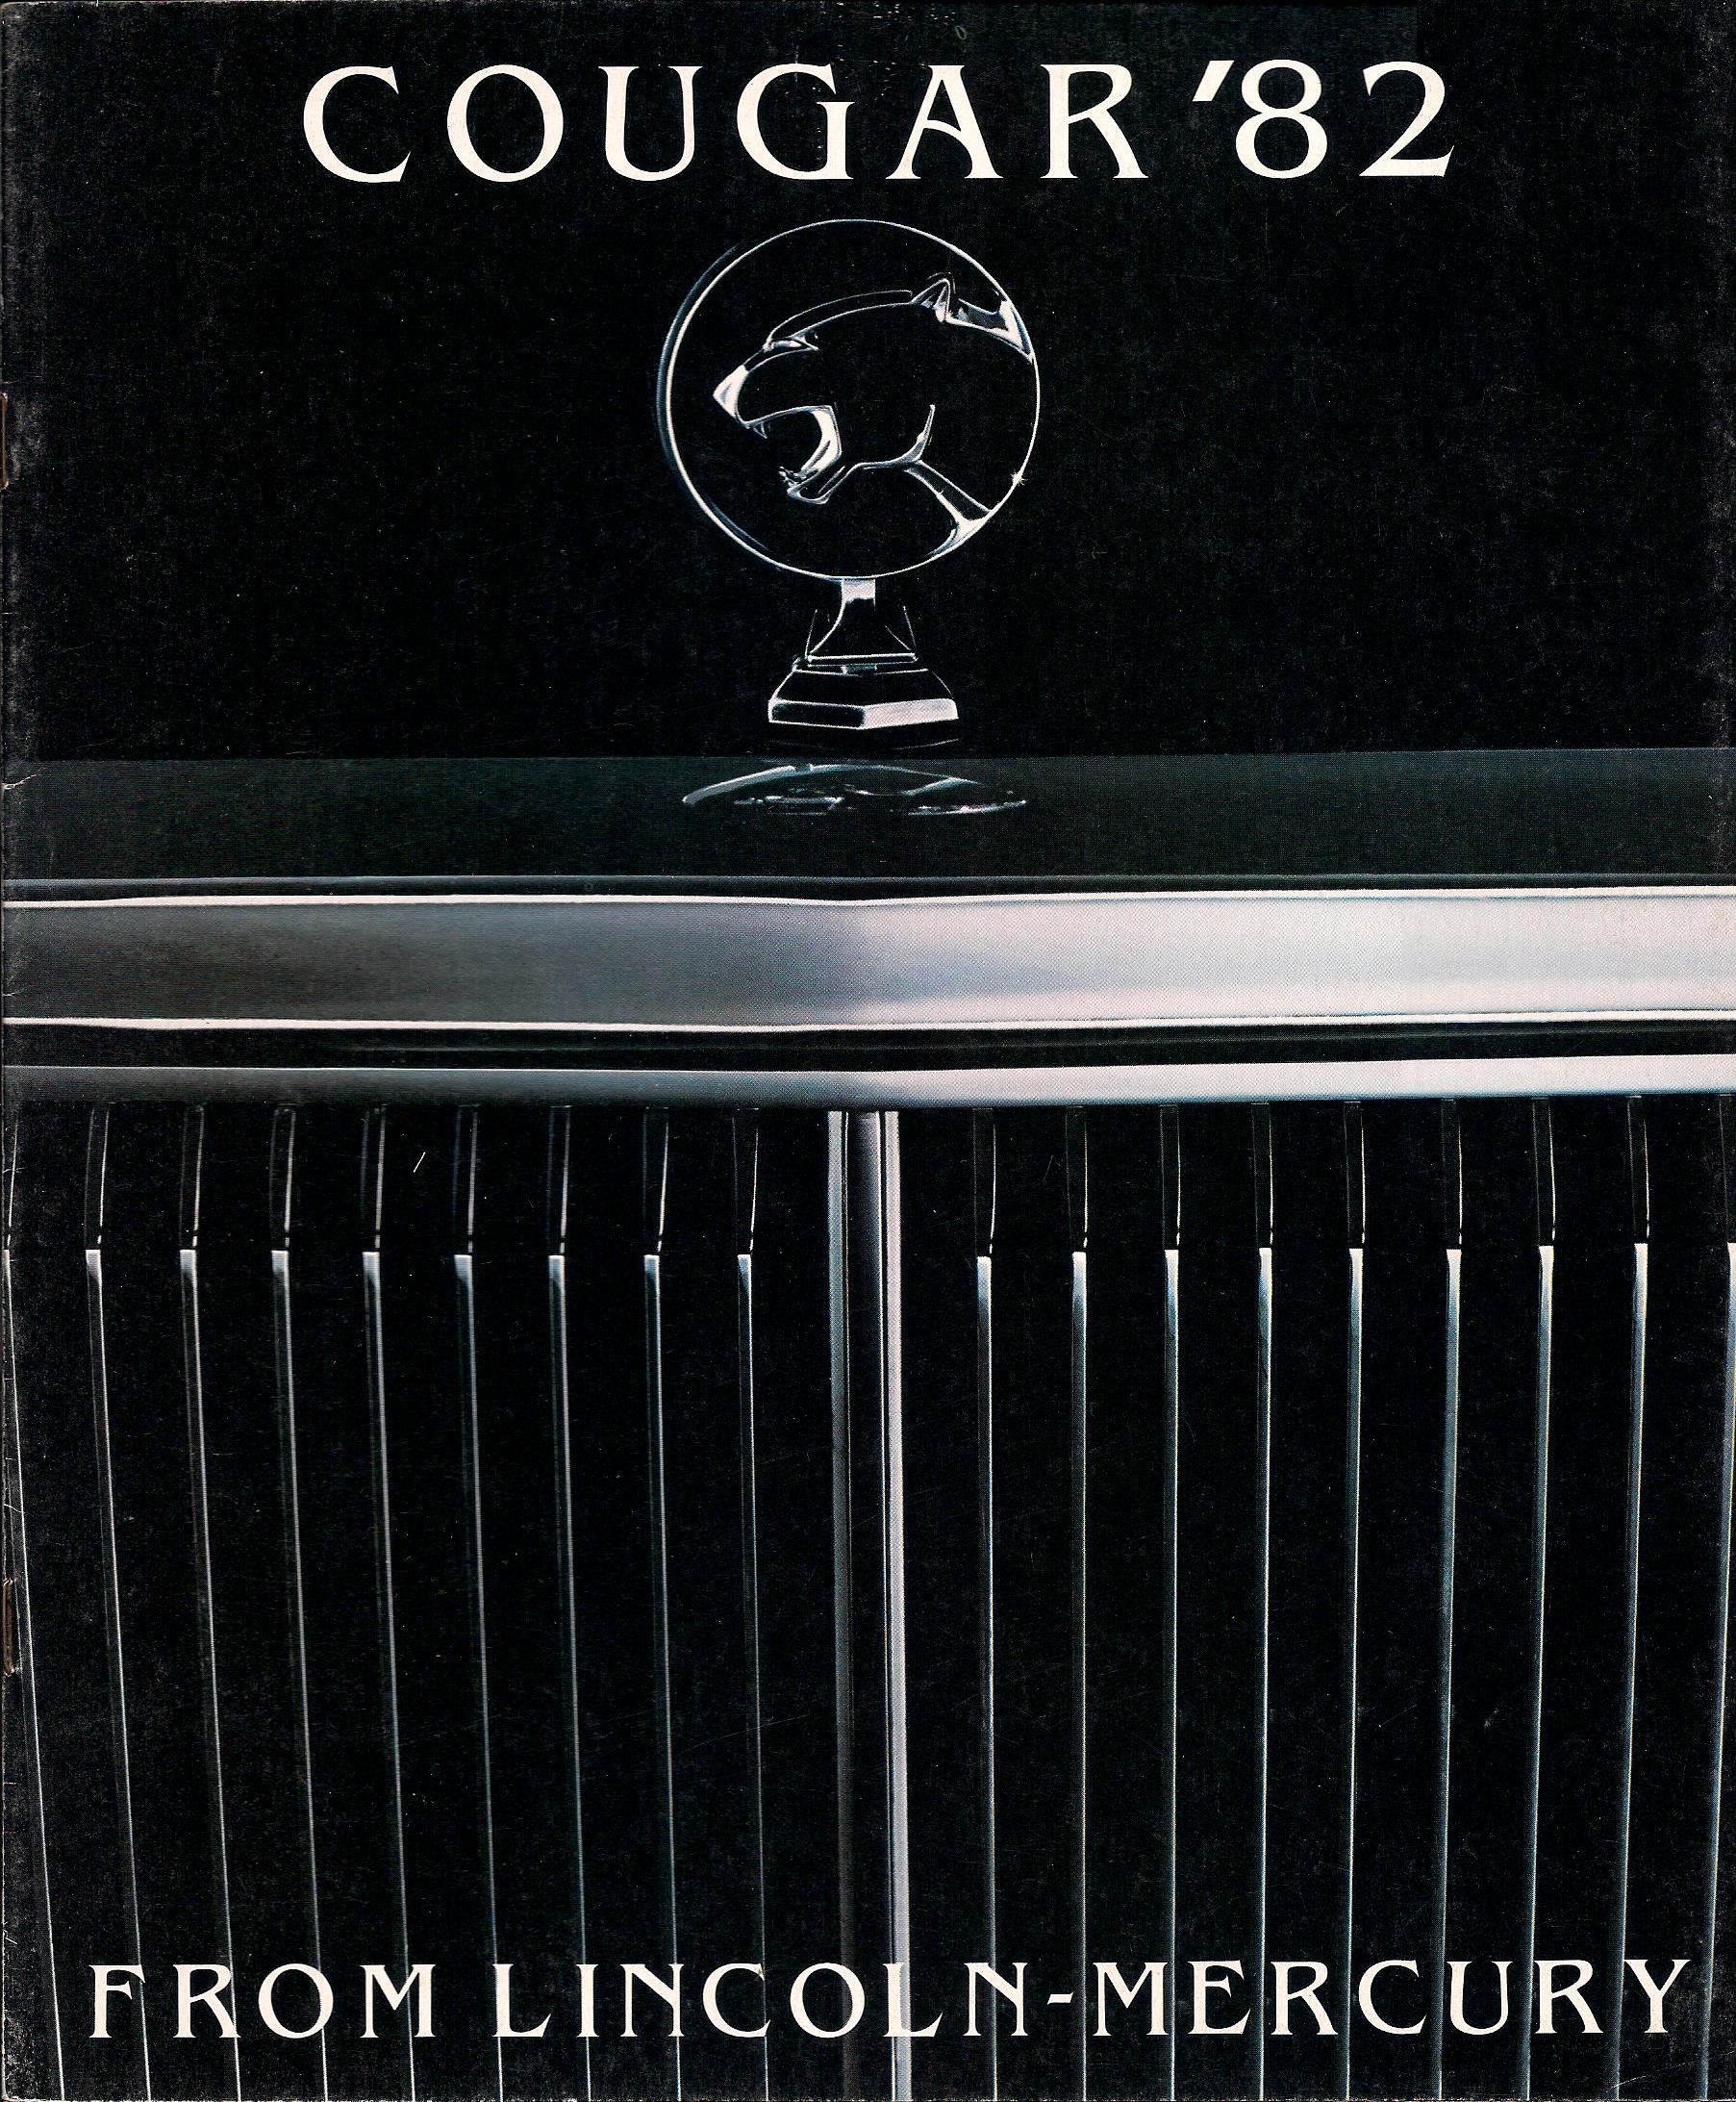 1982 Mercury Cougar Brochure Page 2